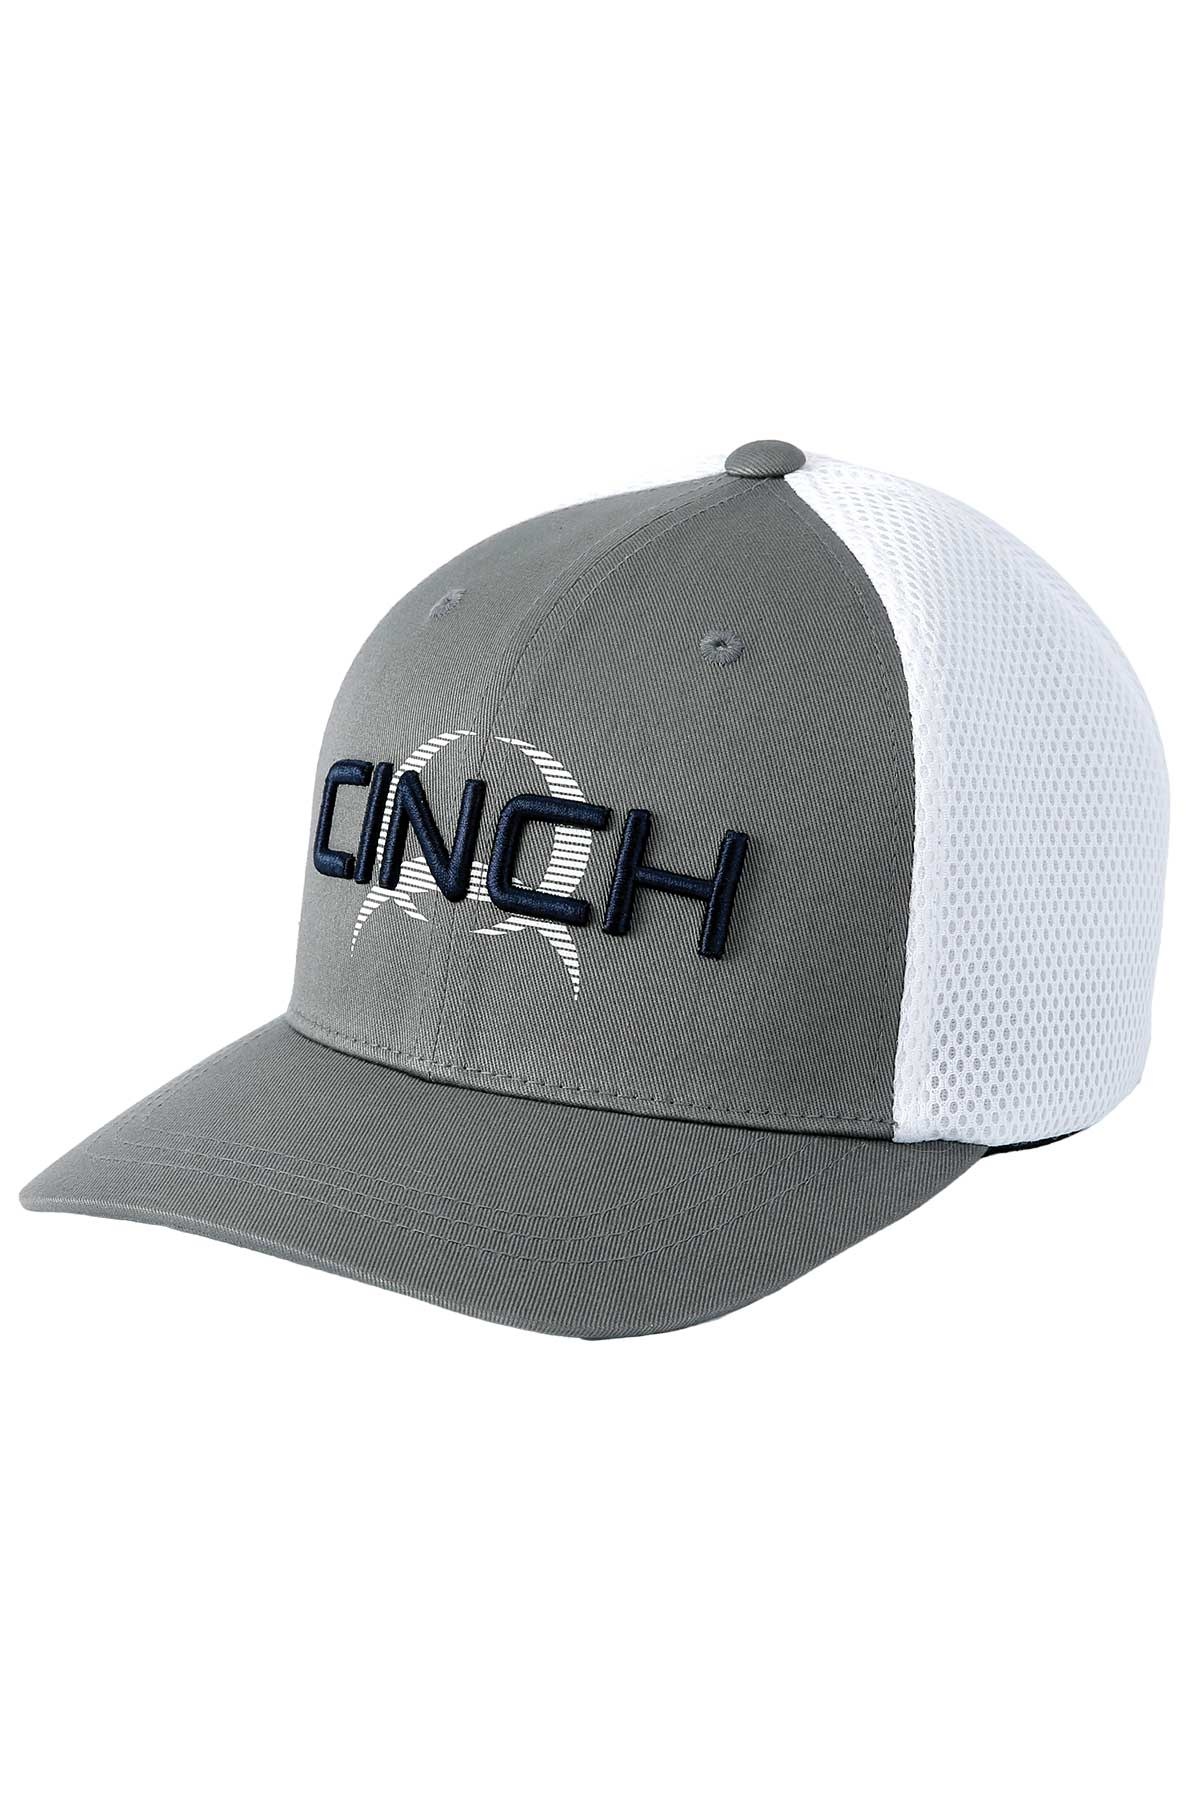 CINCH GRAY Wear CAP Corral - MCC0653311 FLEXFIT Western